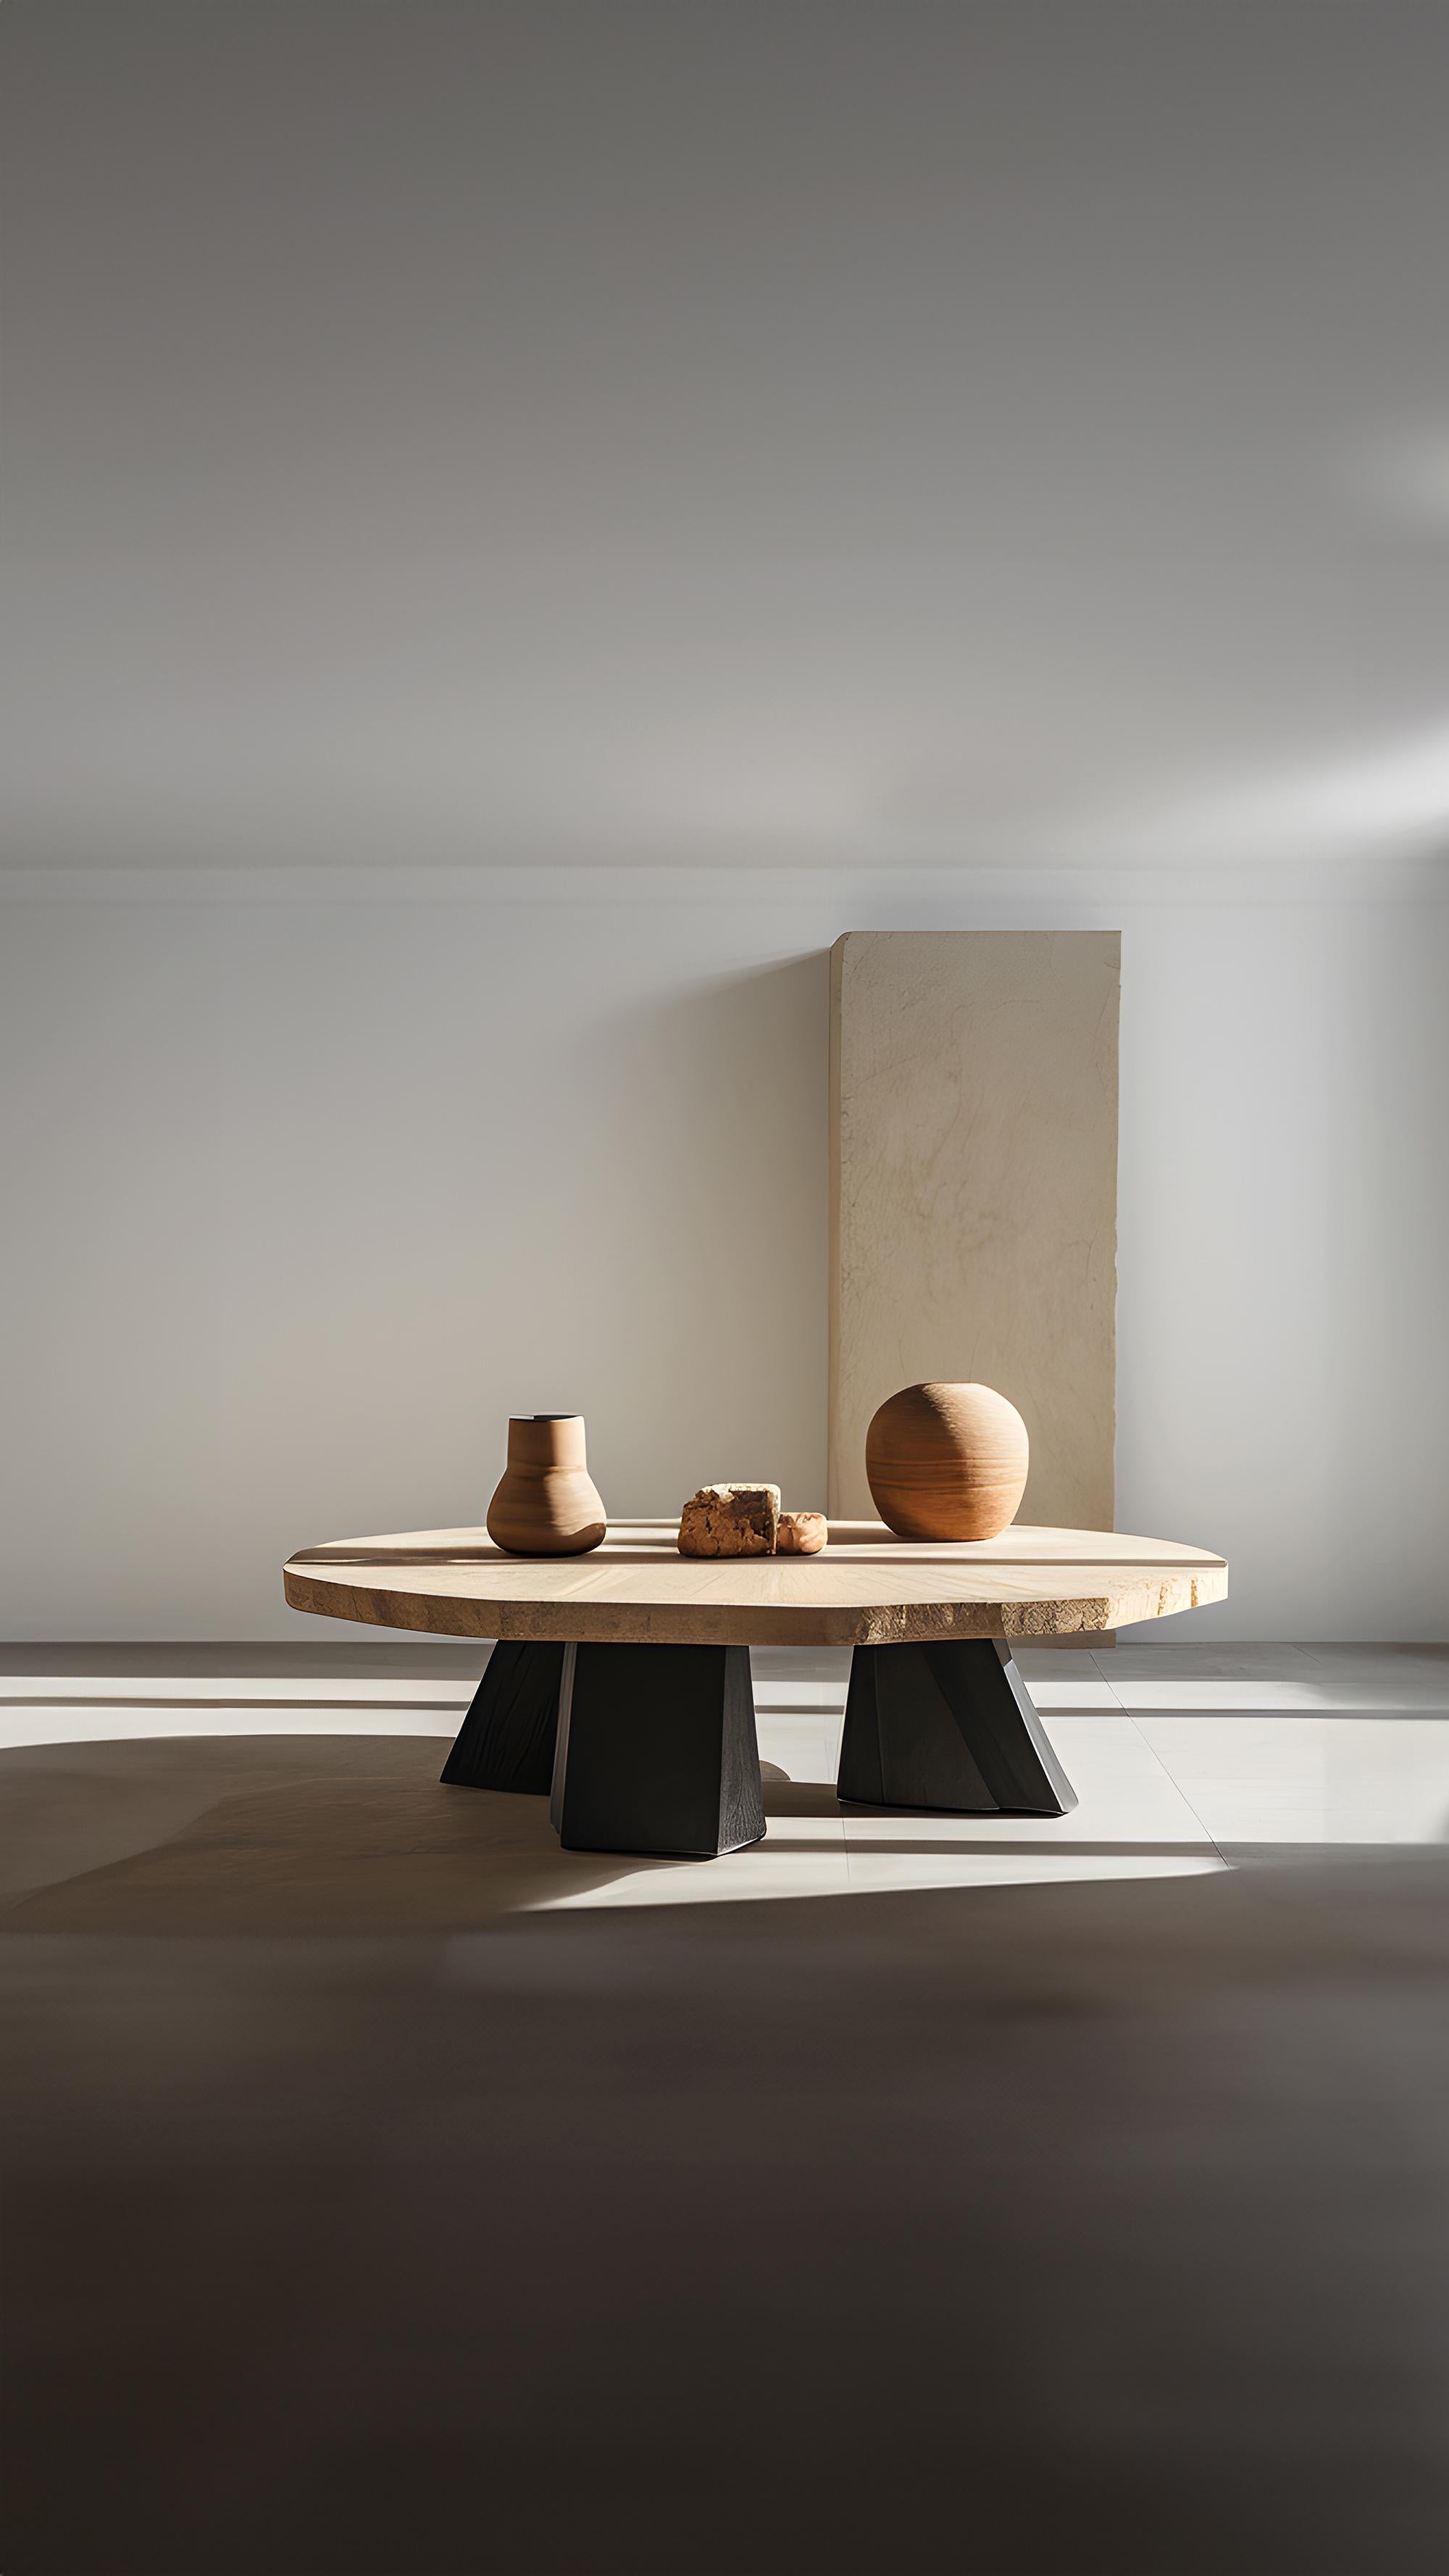 Duo-Tone Square Coffee Table - Dynamic Fundamenta 35 by NONO For Sale 2